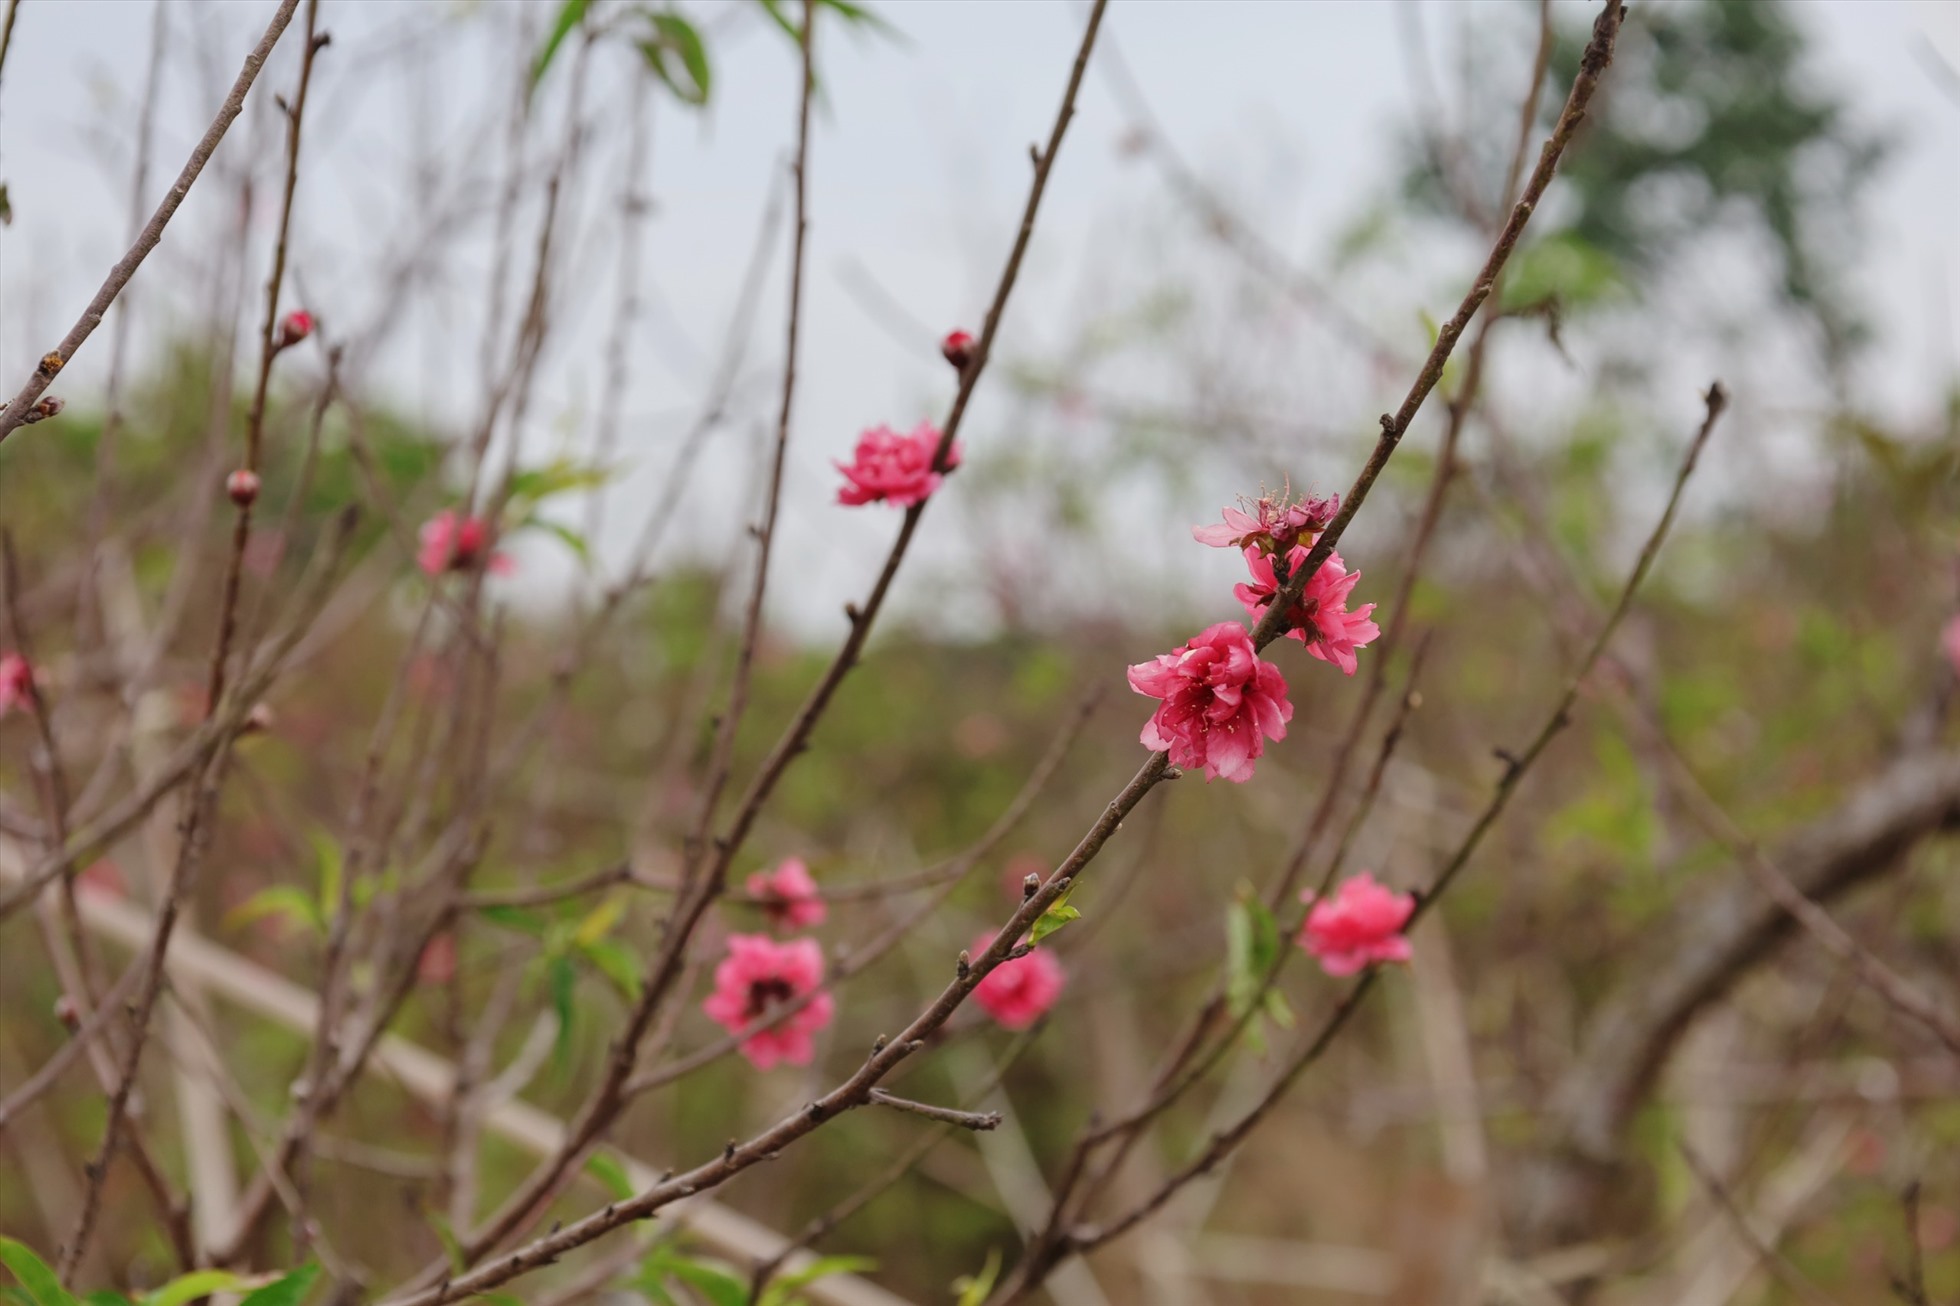 Những cây hoa nở sớm, người chủ sẽ cắt để bán sớm, phục vụ dịp Tết Dương lịch. Ảnh: Nguyễn Thúy.